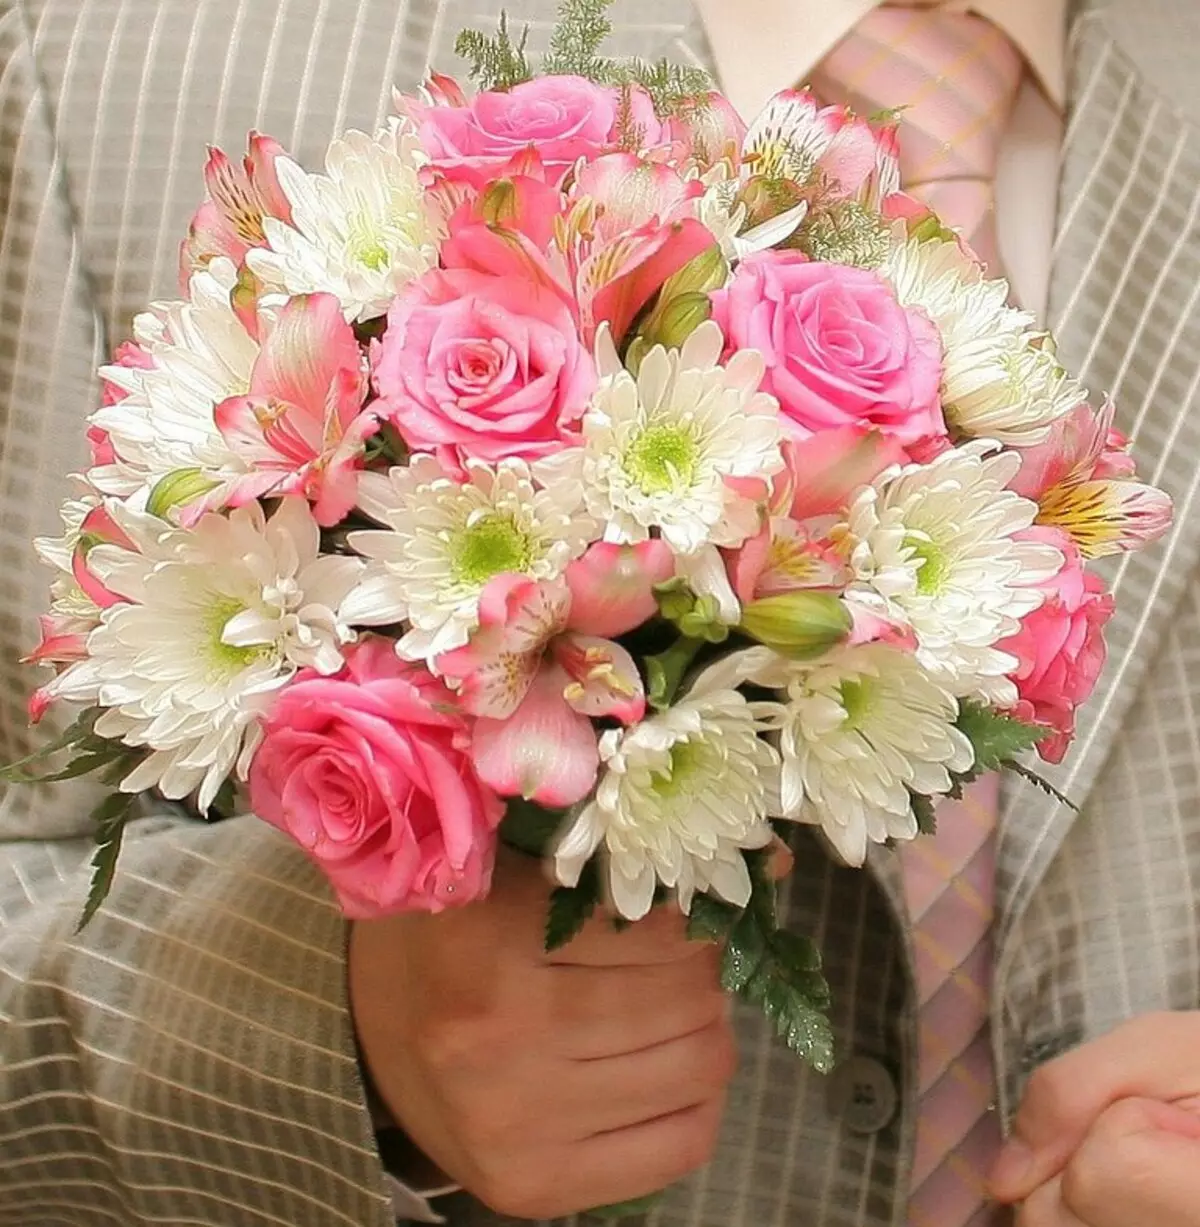 ช่อดอกไม้เจ้าสาวของดอกกุหลาบ (74 รูป): องค์ประกอบงานแต่งงานที่ทำจากดอกกุหลาบกับ Eustomas สีขาว, Freesies สีน้ำเงินและ alstromeries สีแดง 8005_36